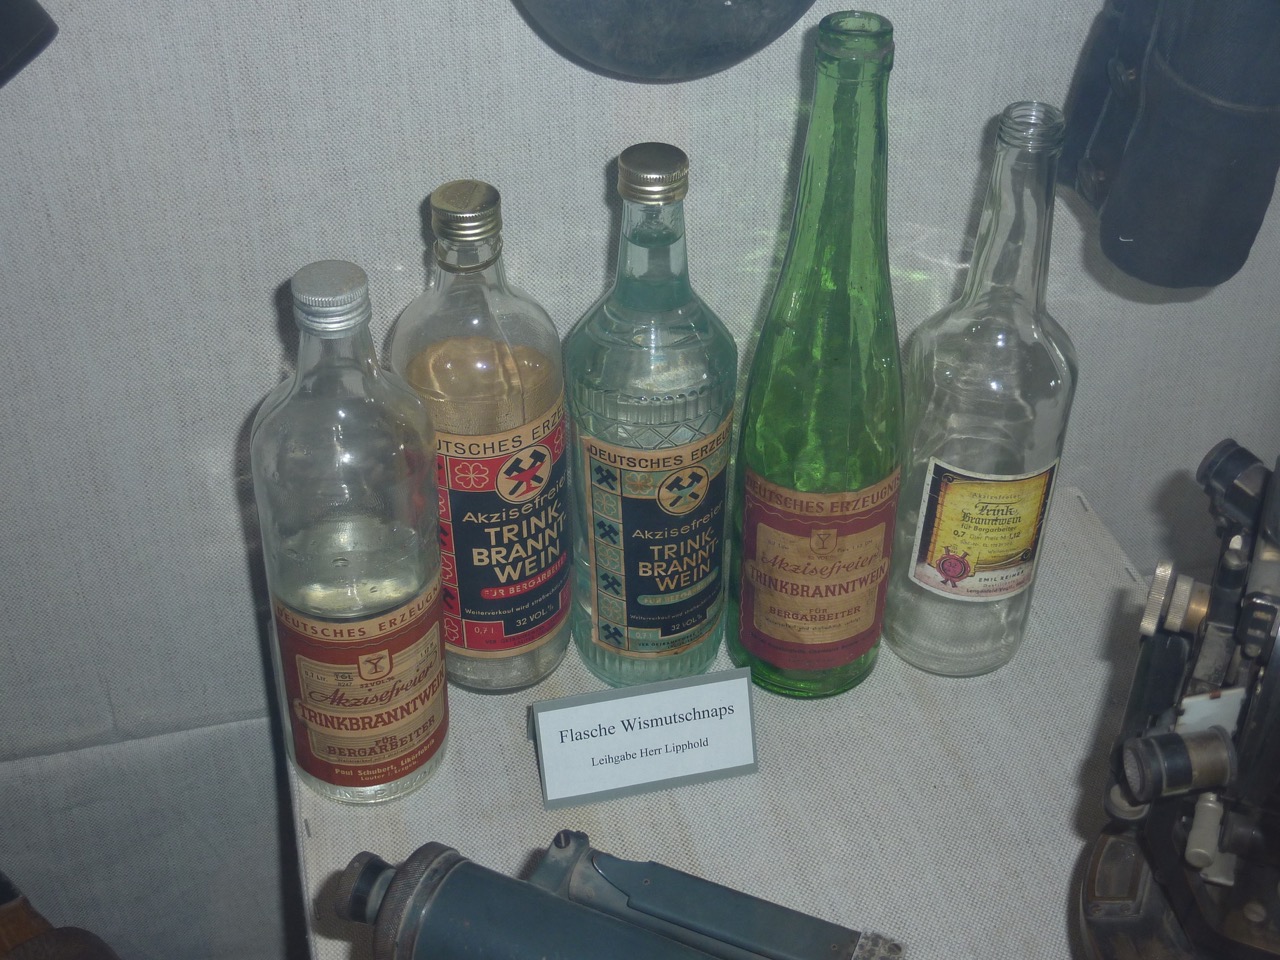 Flaschen, in denen der akzisefreie Bergarbeiterschnaps 
("Kumpeltod" ) verkauft wurde.